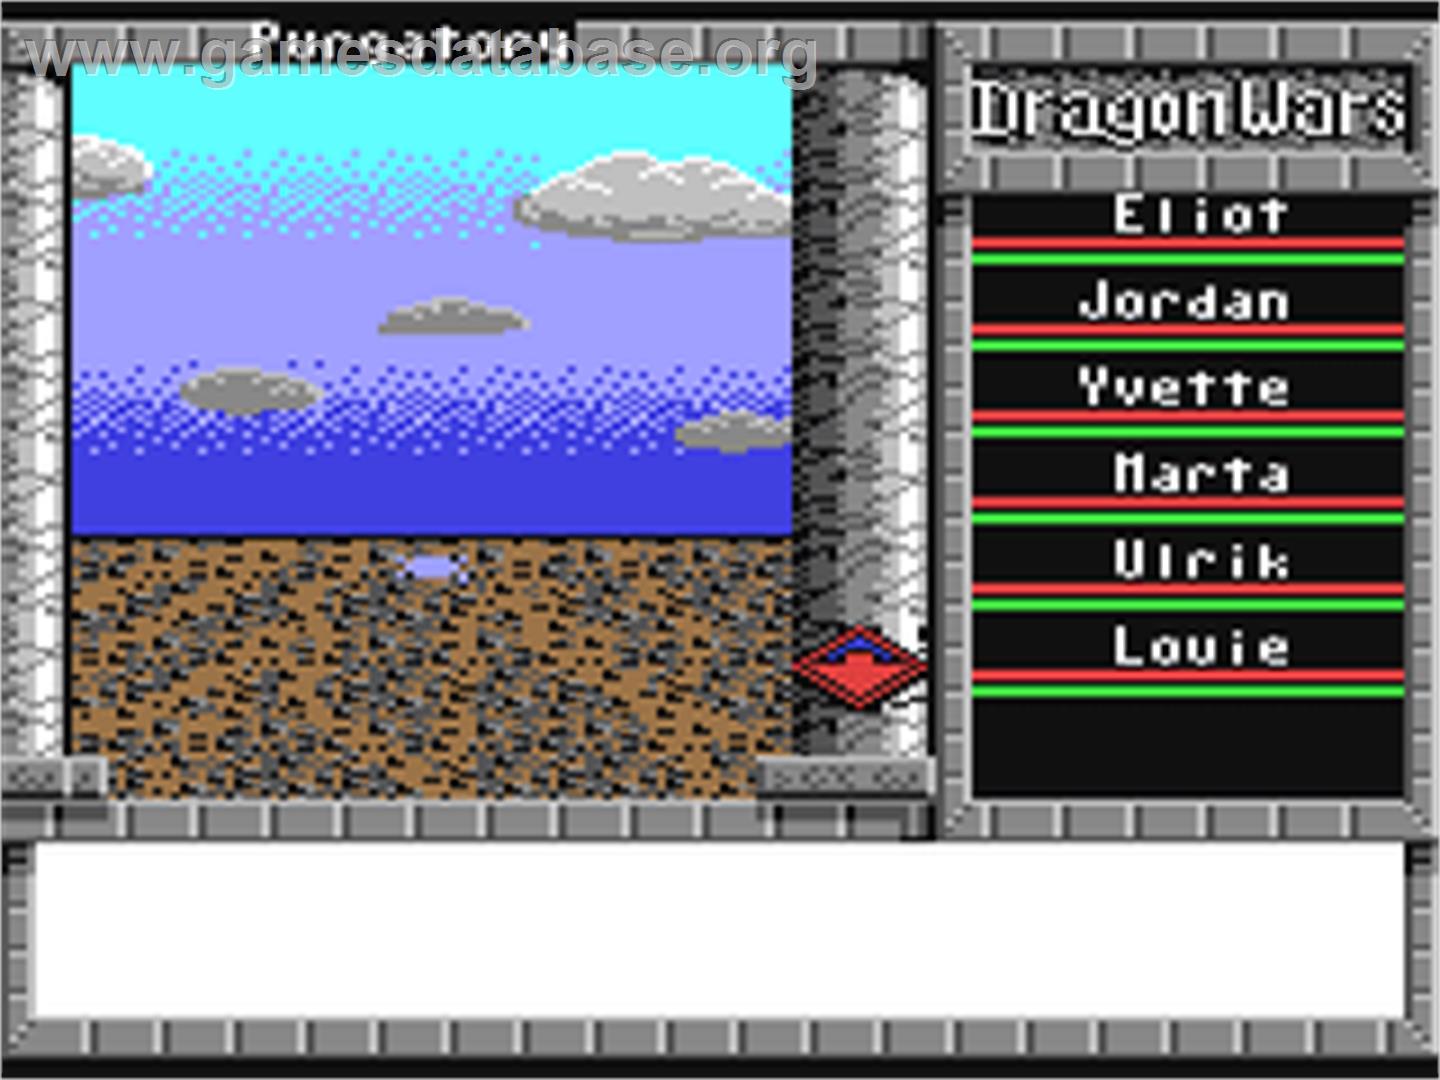 Dragon Wars - Commodore 64 - Artwork - In Game